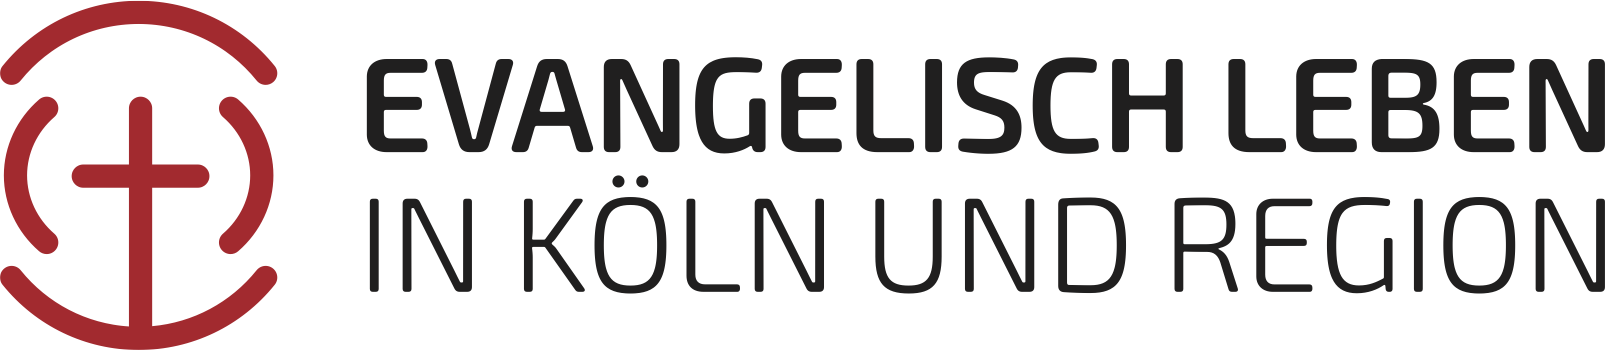 Evangelischer Kirchenverband Köln und Region